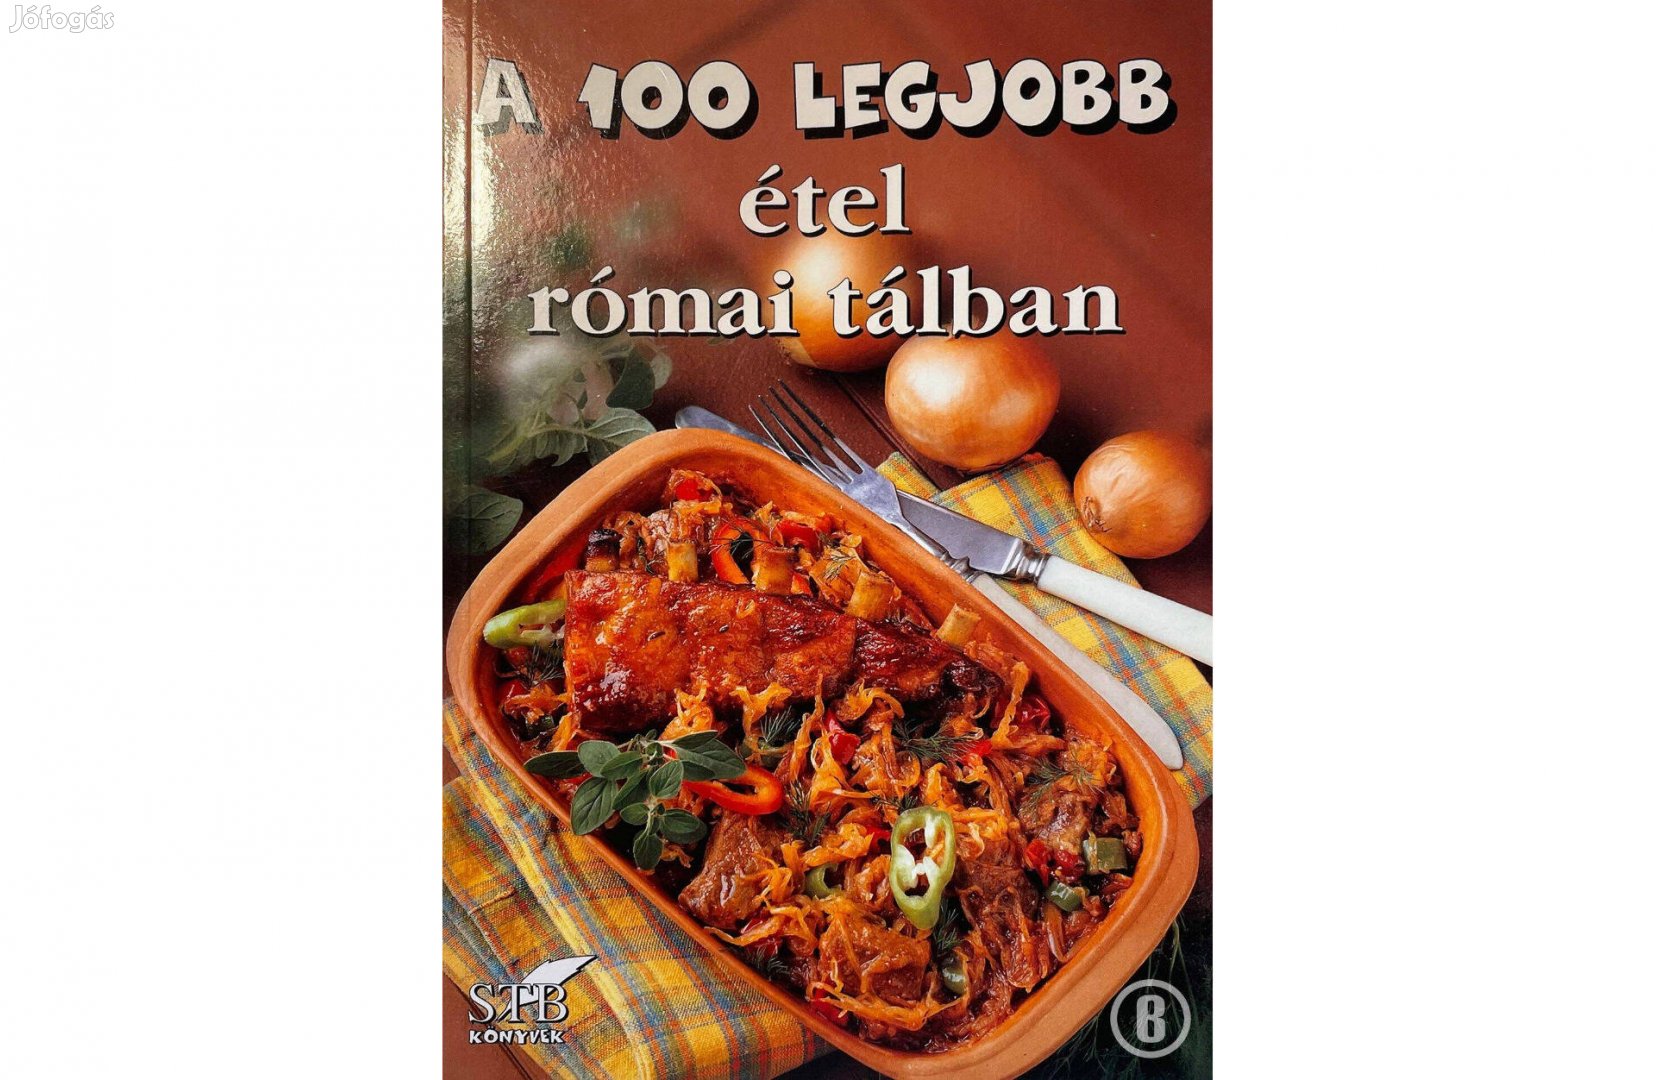 A 100 legjobb étel római tálban (30. kötet / szerk. Toró Elza)